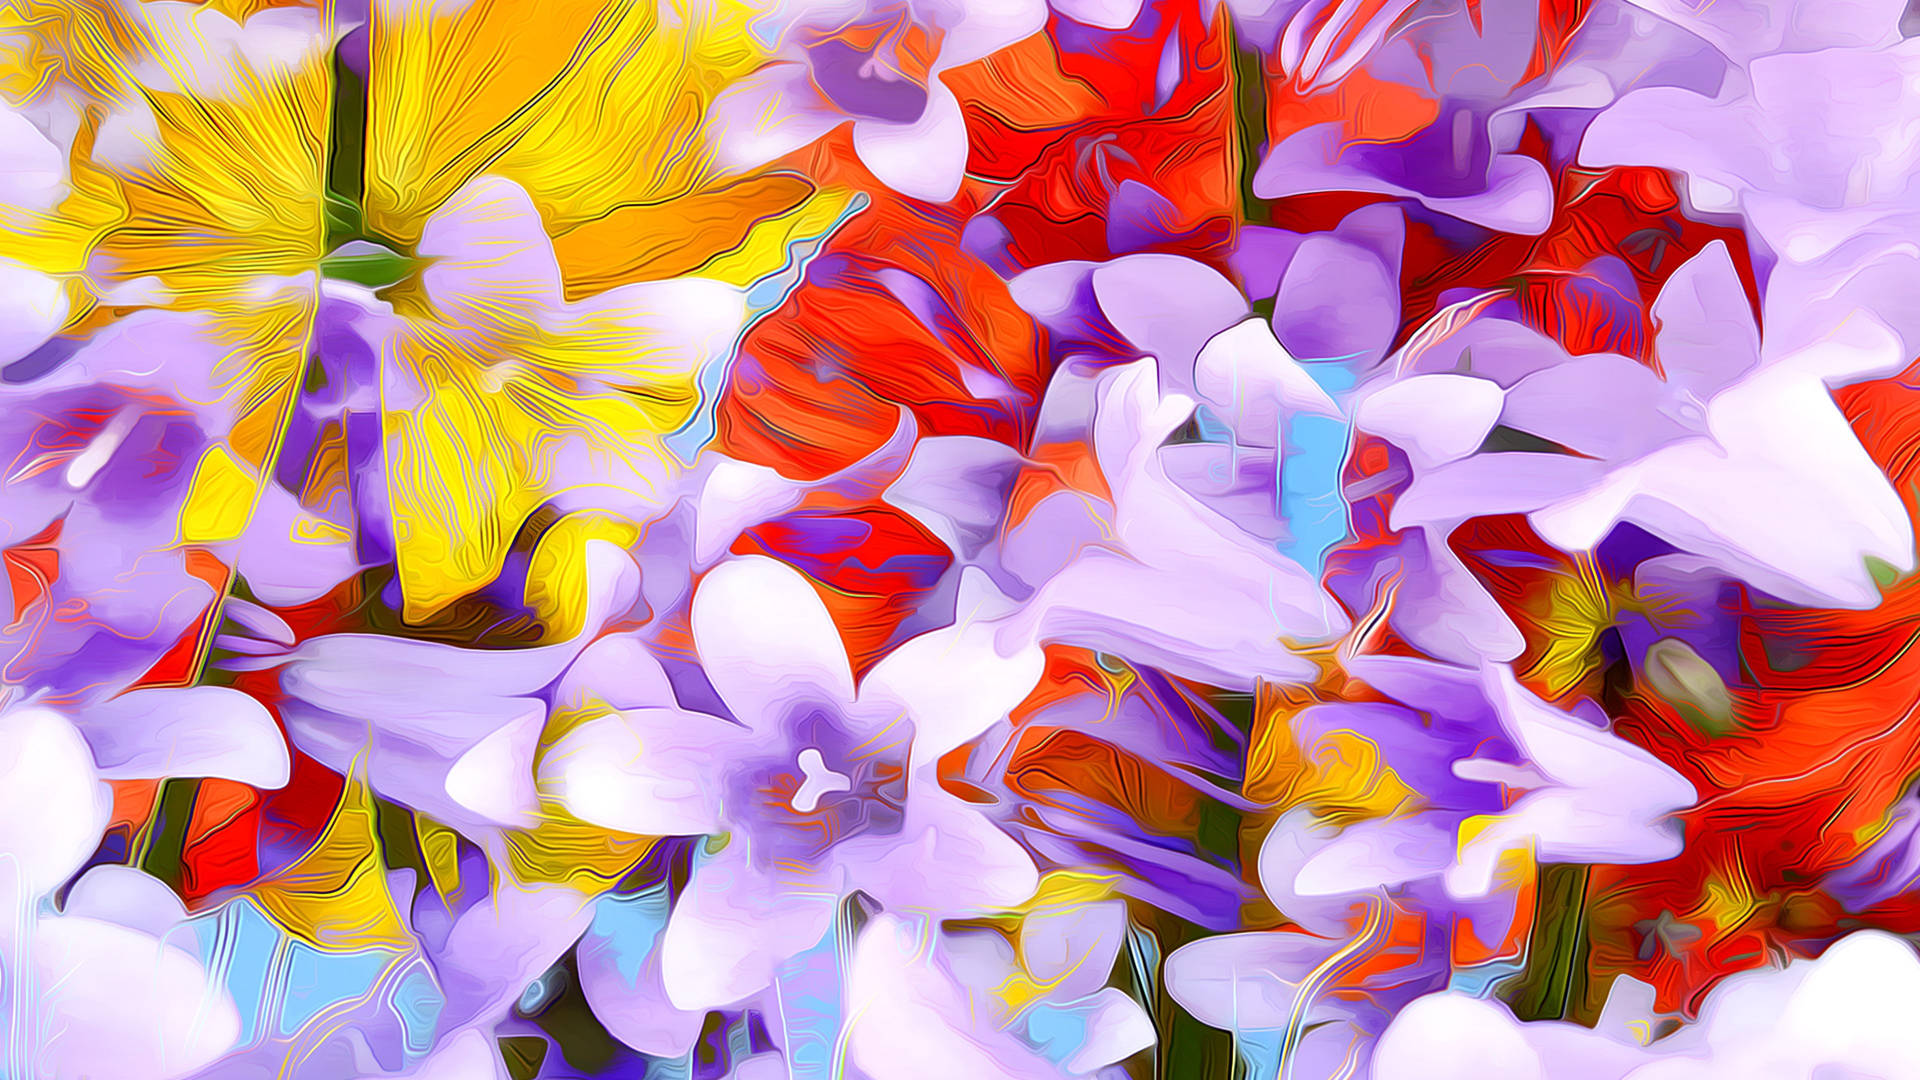 Florescoloridas De Primavera Em Desenho Digital. Papel de Parede